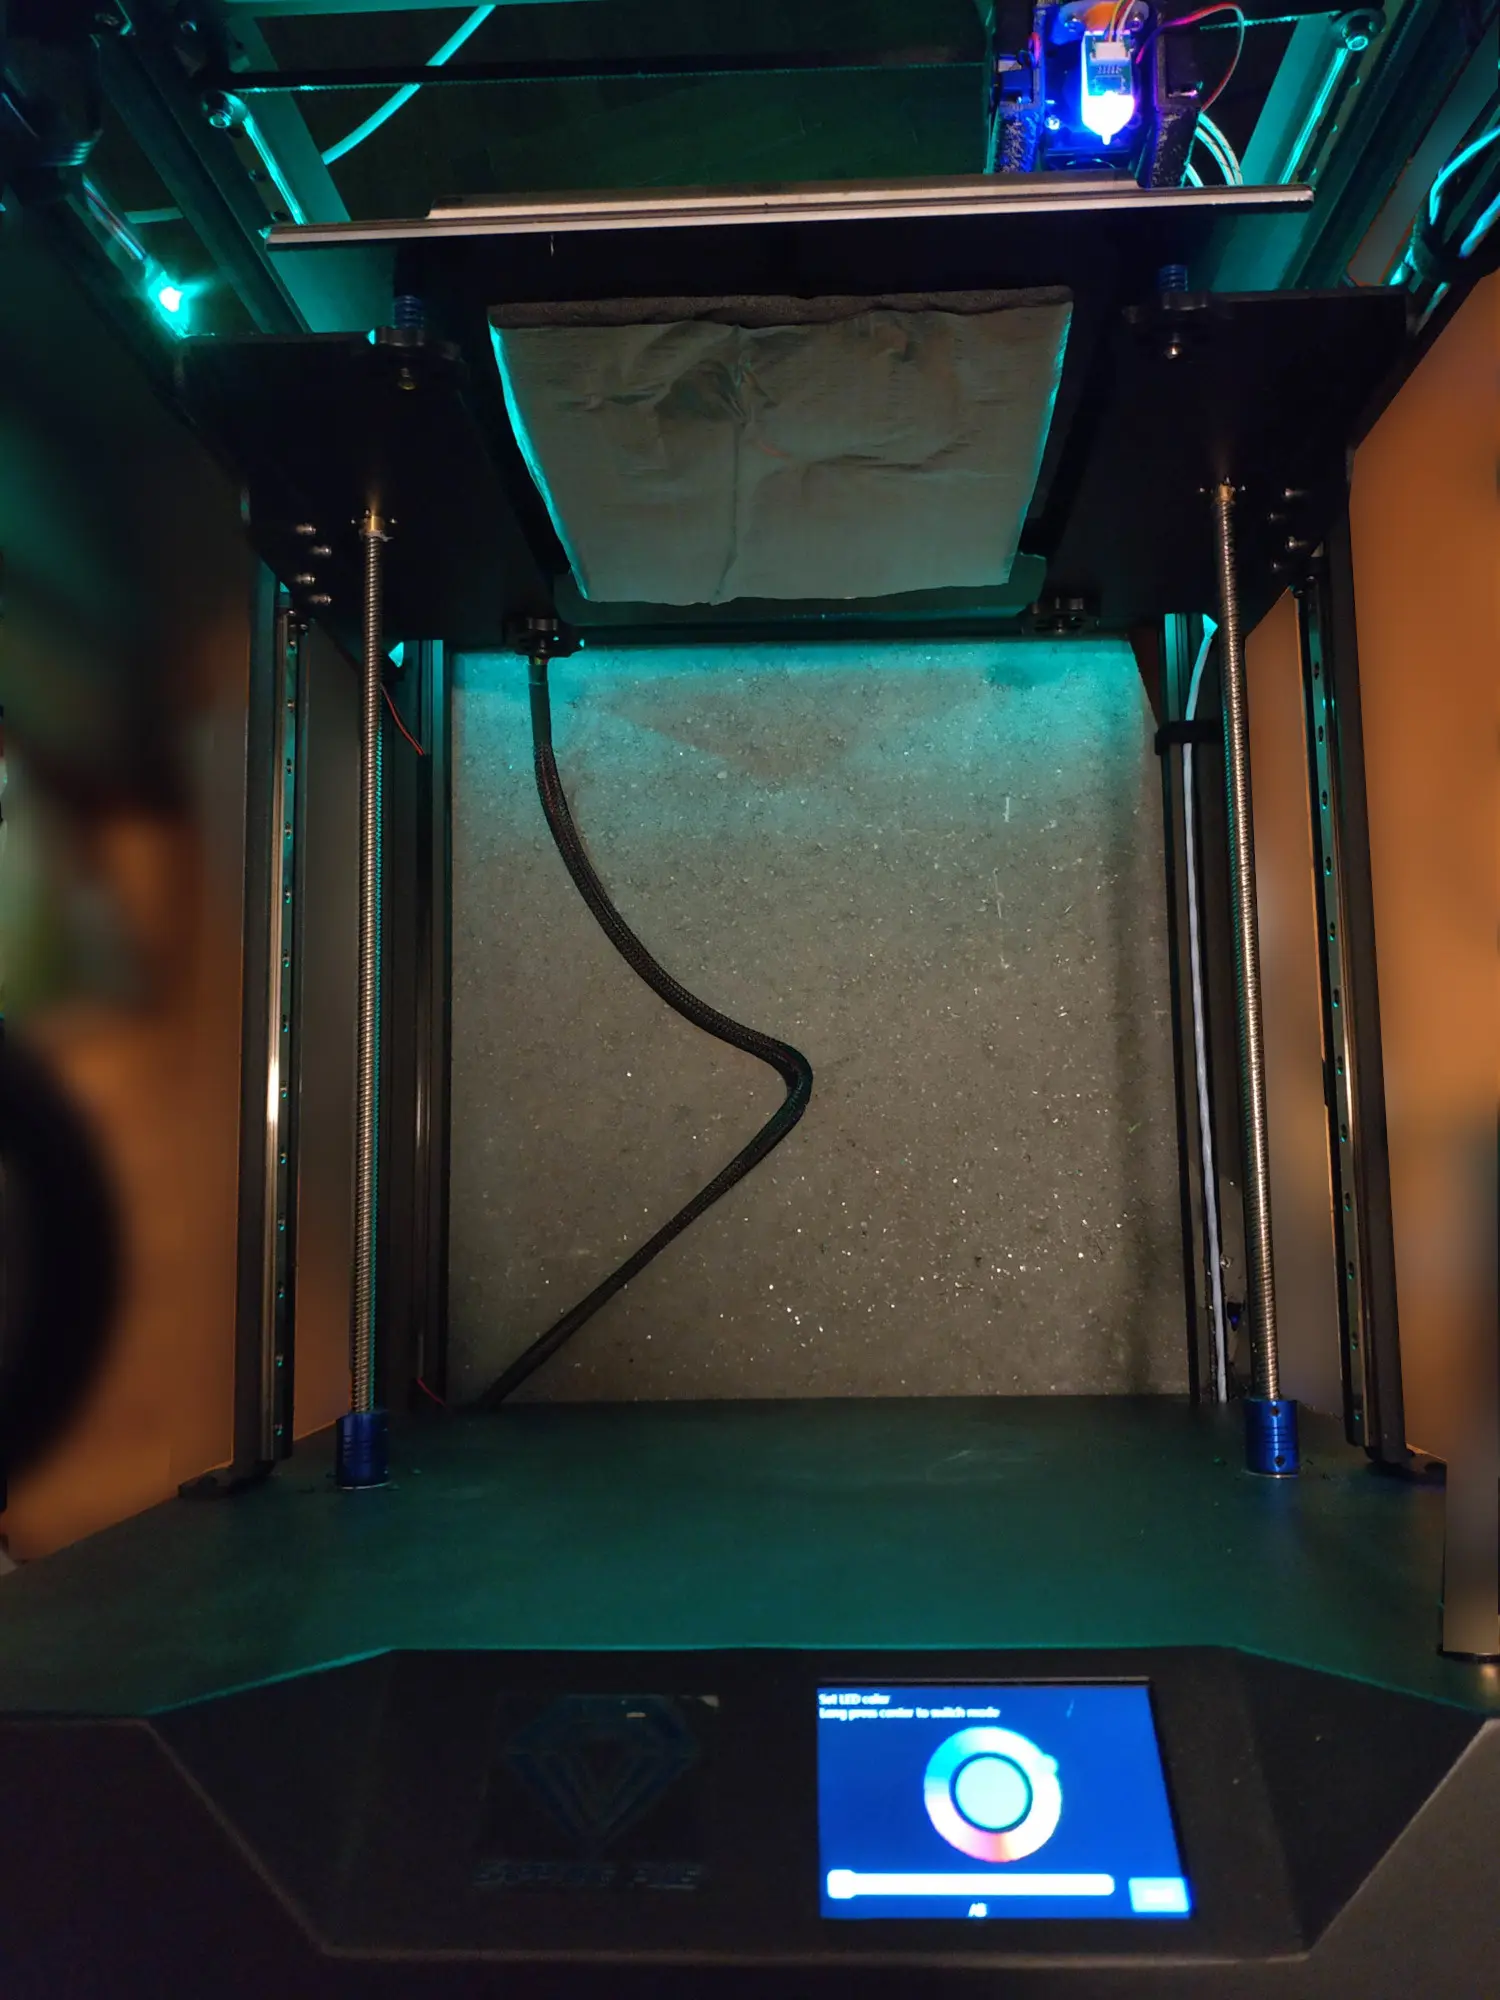 Installing Neopixel on your 3D printer